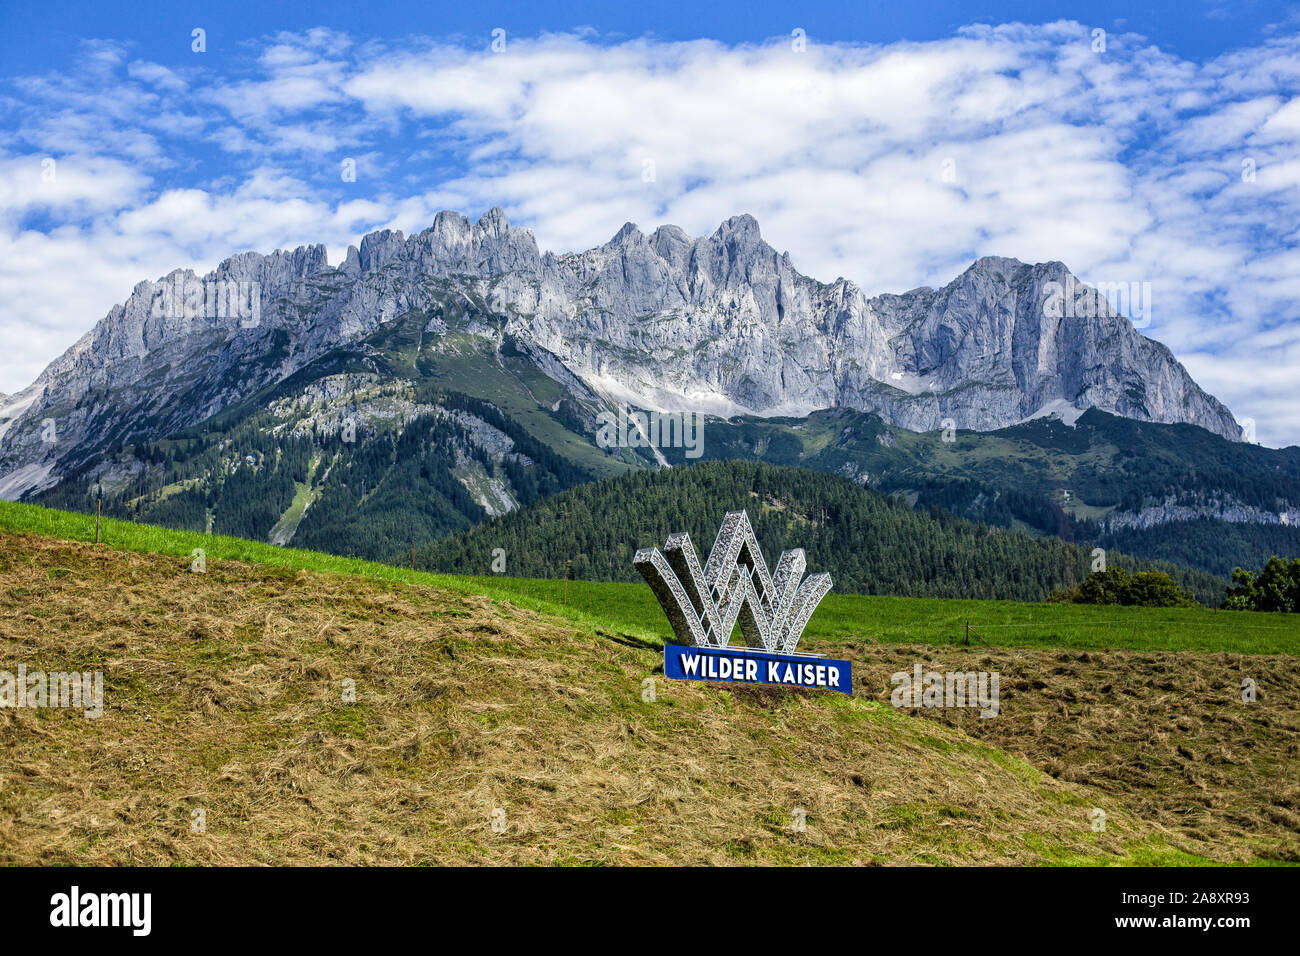 Die Wilden Kaiser und Willkommen Zeichen für die Region Wilder Kaiser, Tirol, Österreich. Stockfoto